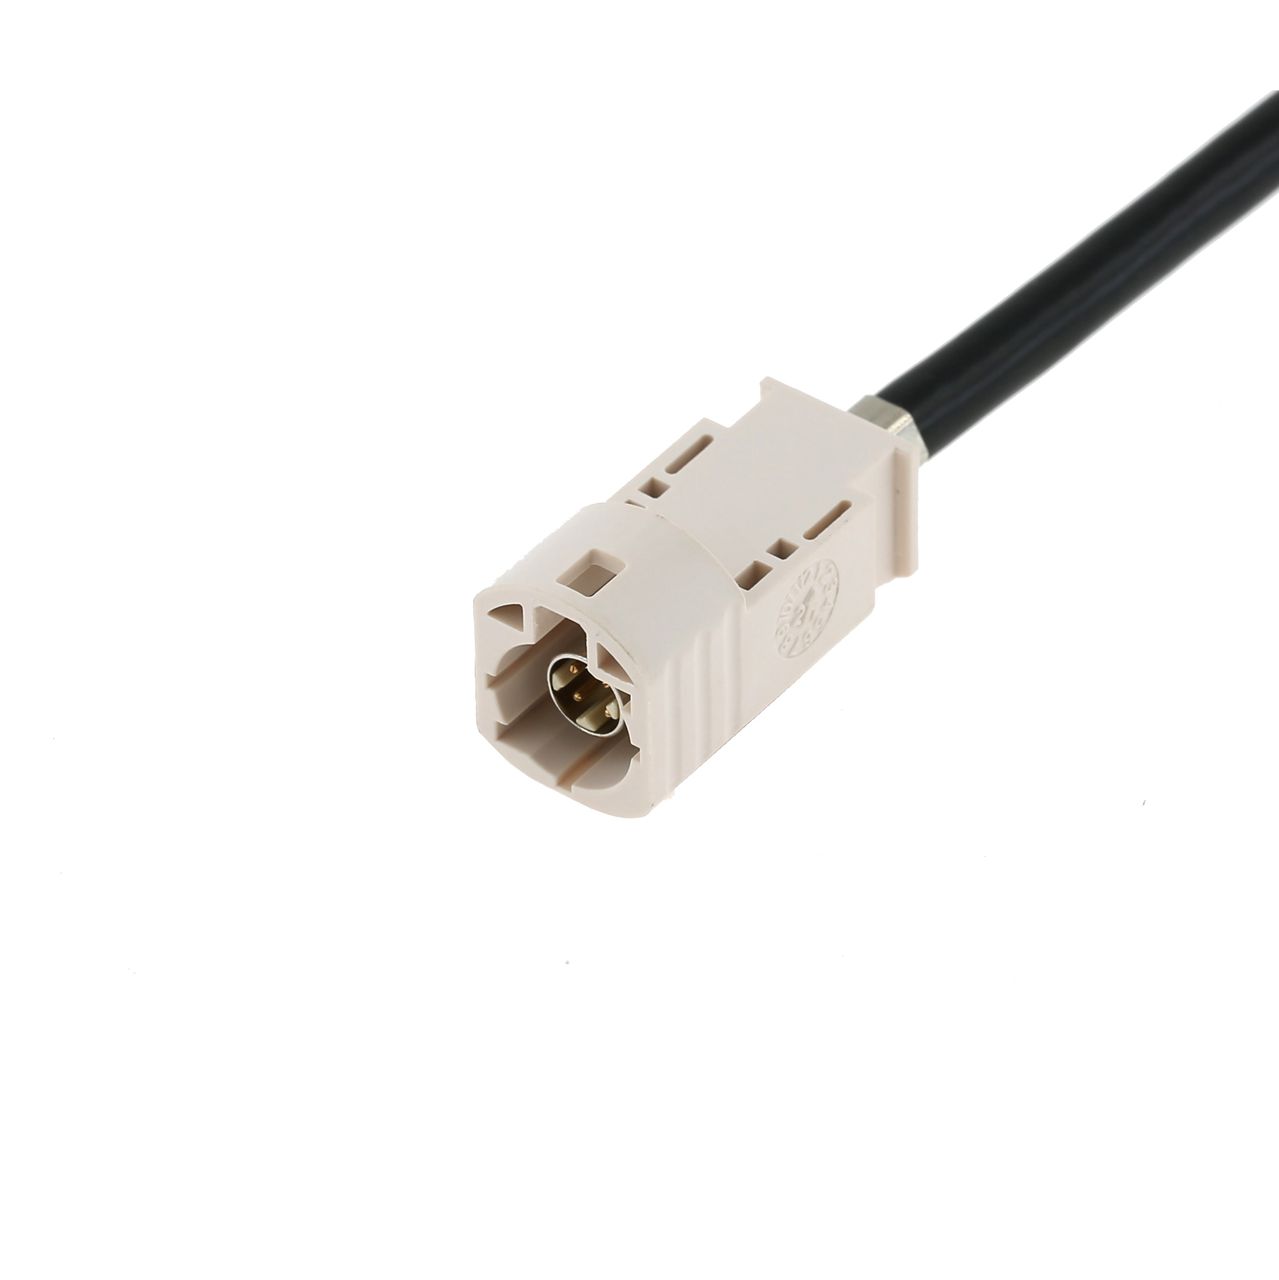 HSD Code B Plug Harness - Rosenberger Connector - HDLC00201-B